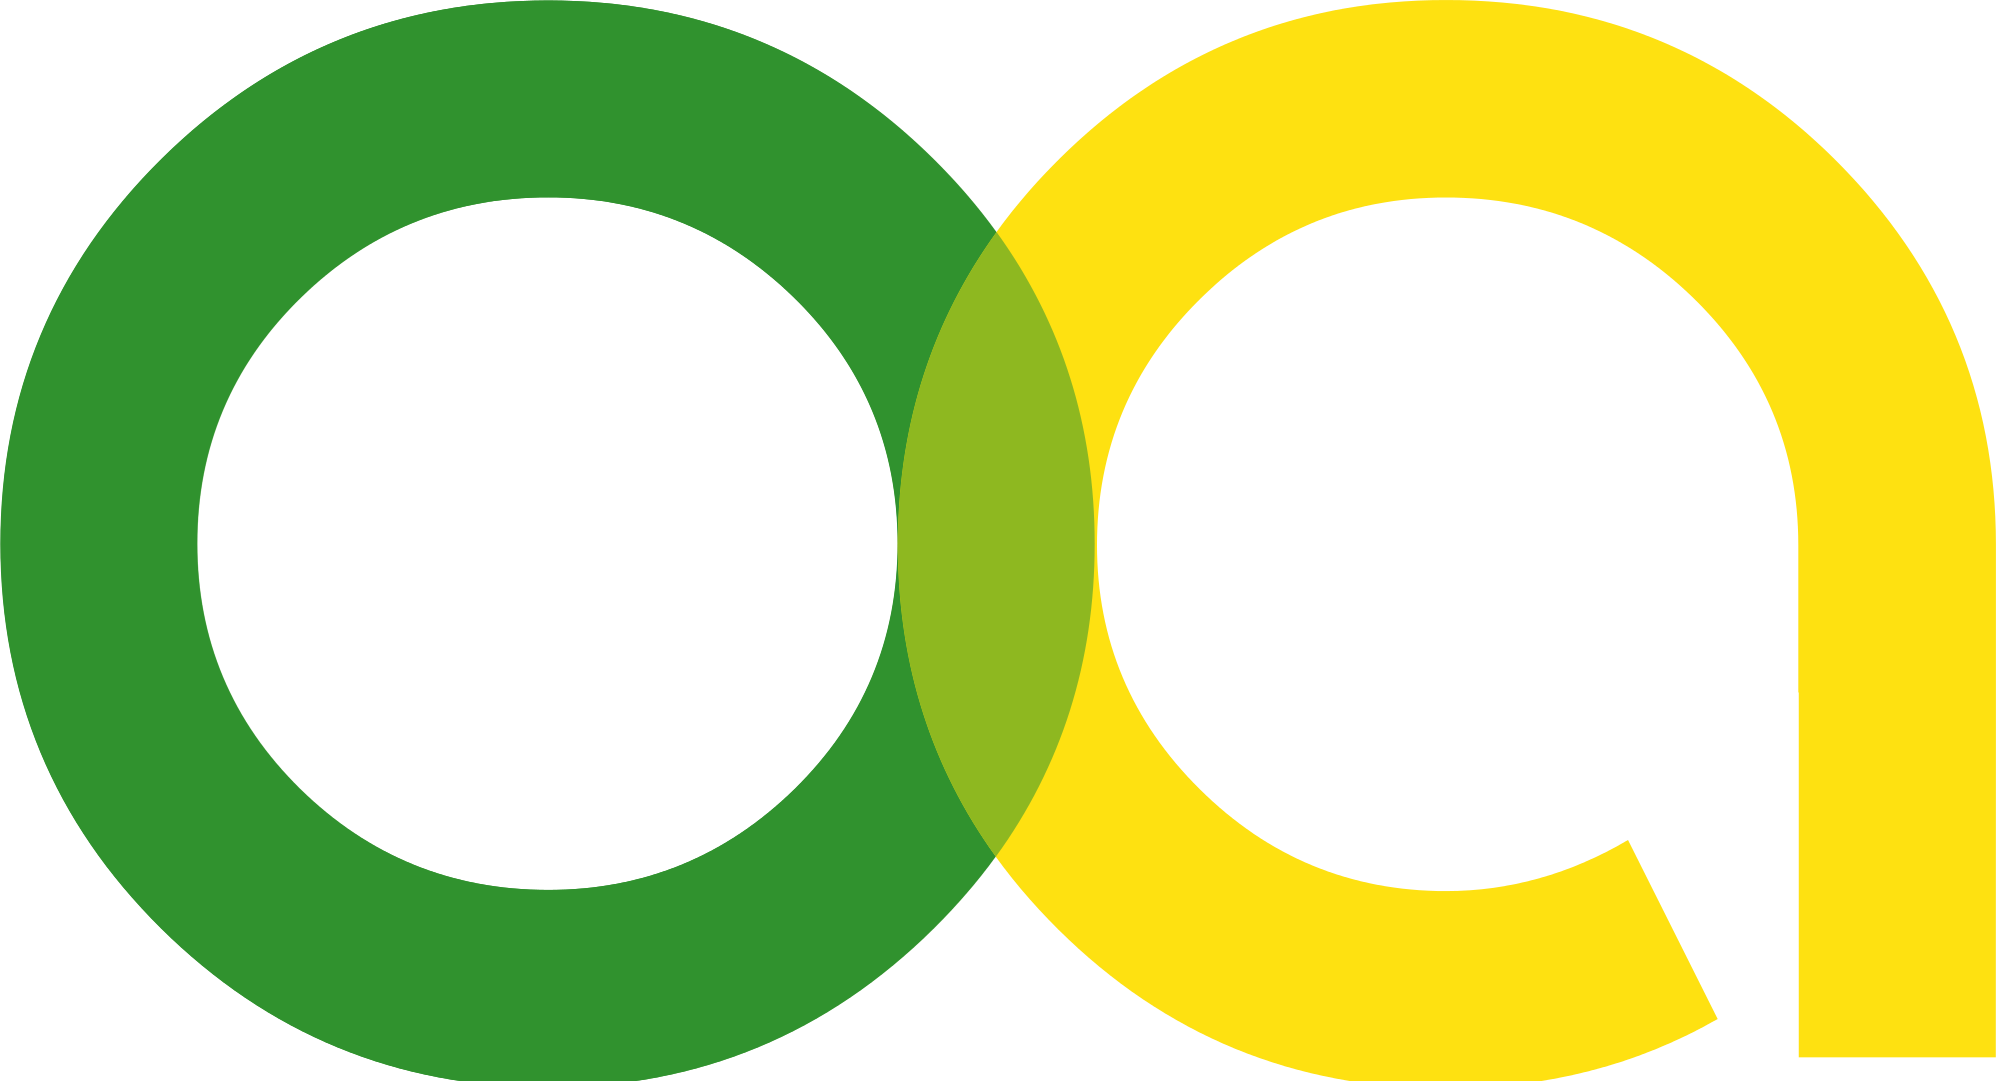 Open-Access-Logo